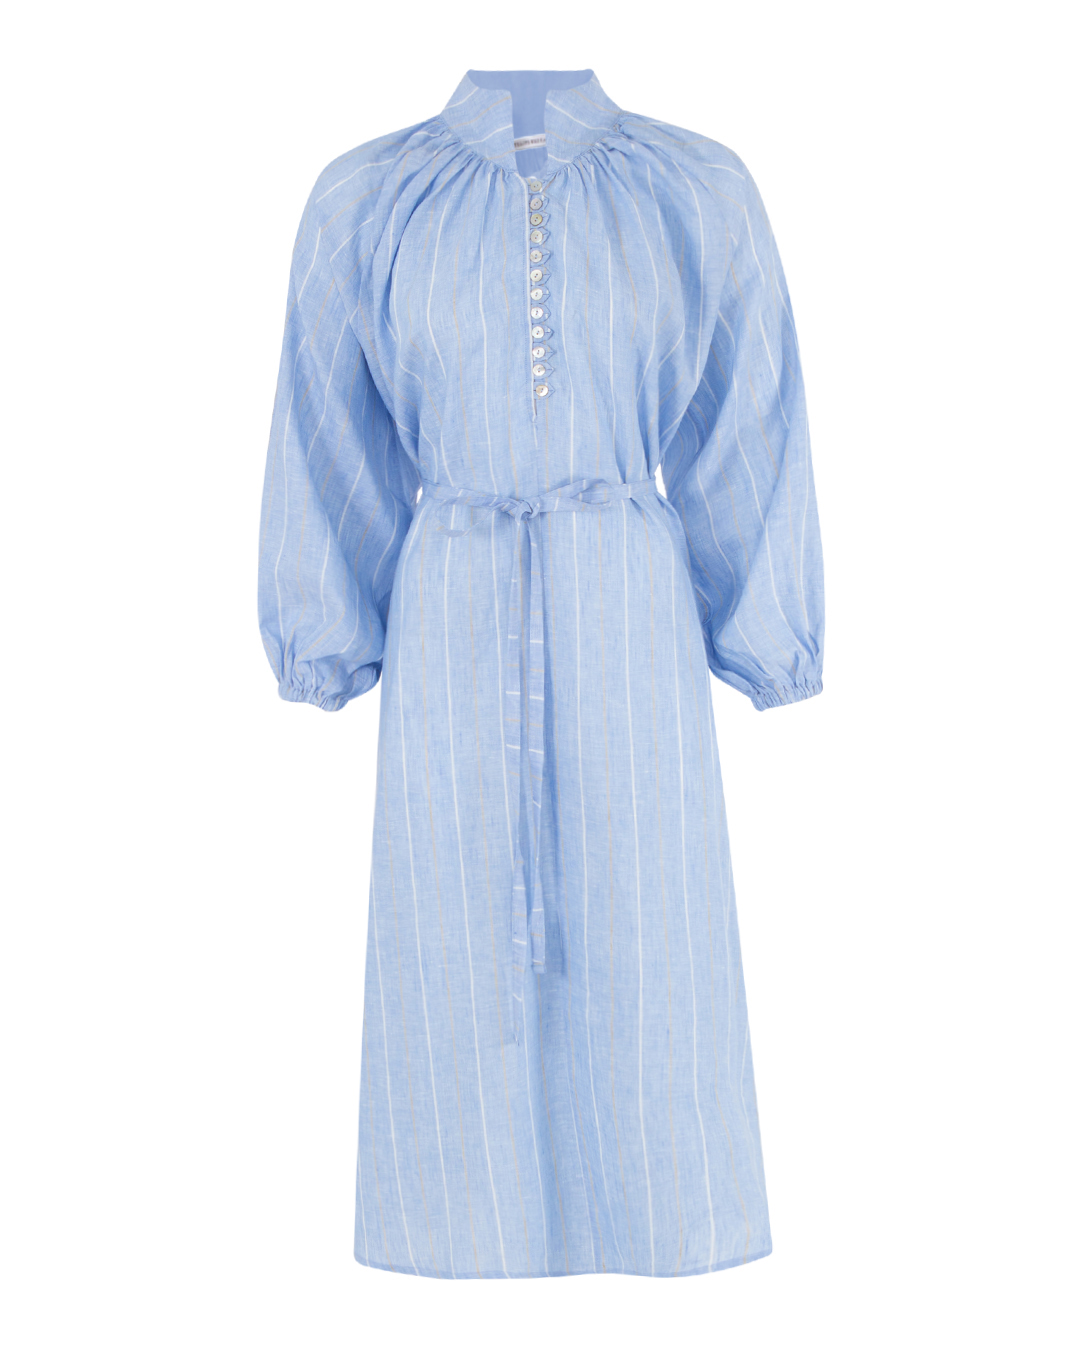 платье ANTELOPE THE LABEL D3.RISKA голубой+принт m/l, размер m/l, цвет голубой+принт D3.RISKA голубой+принт m/l - фото 1